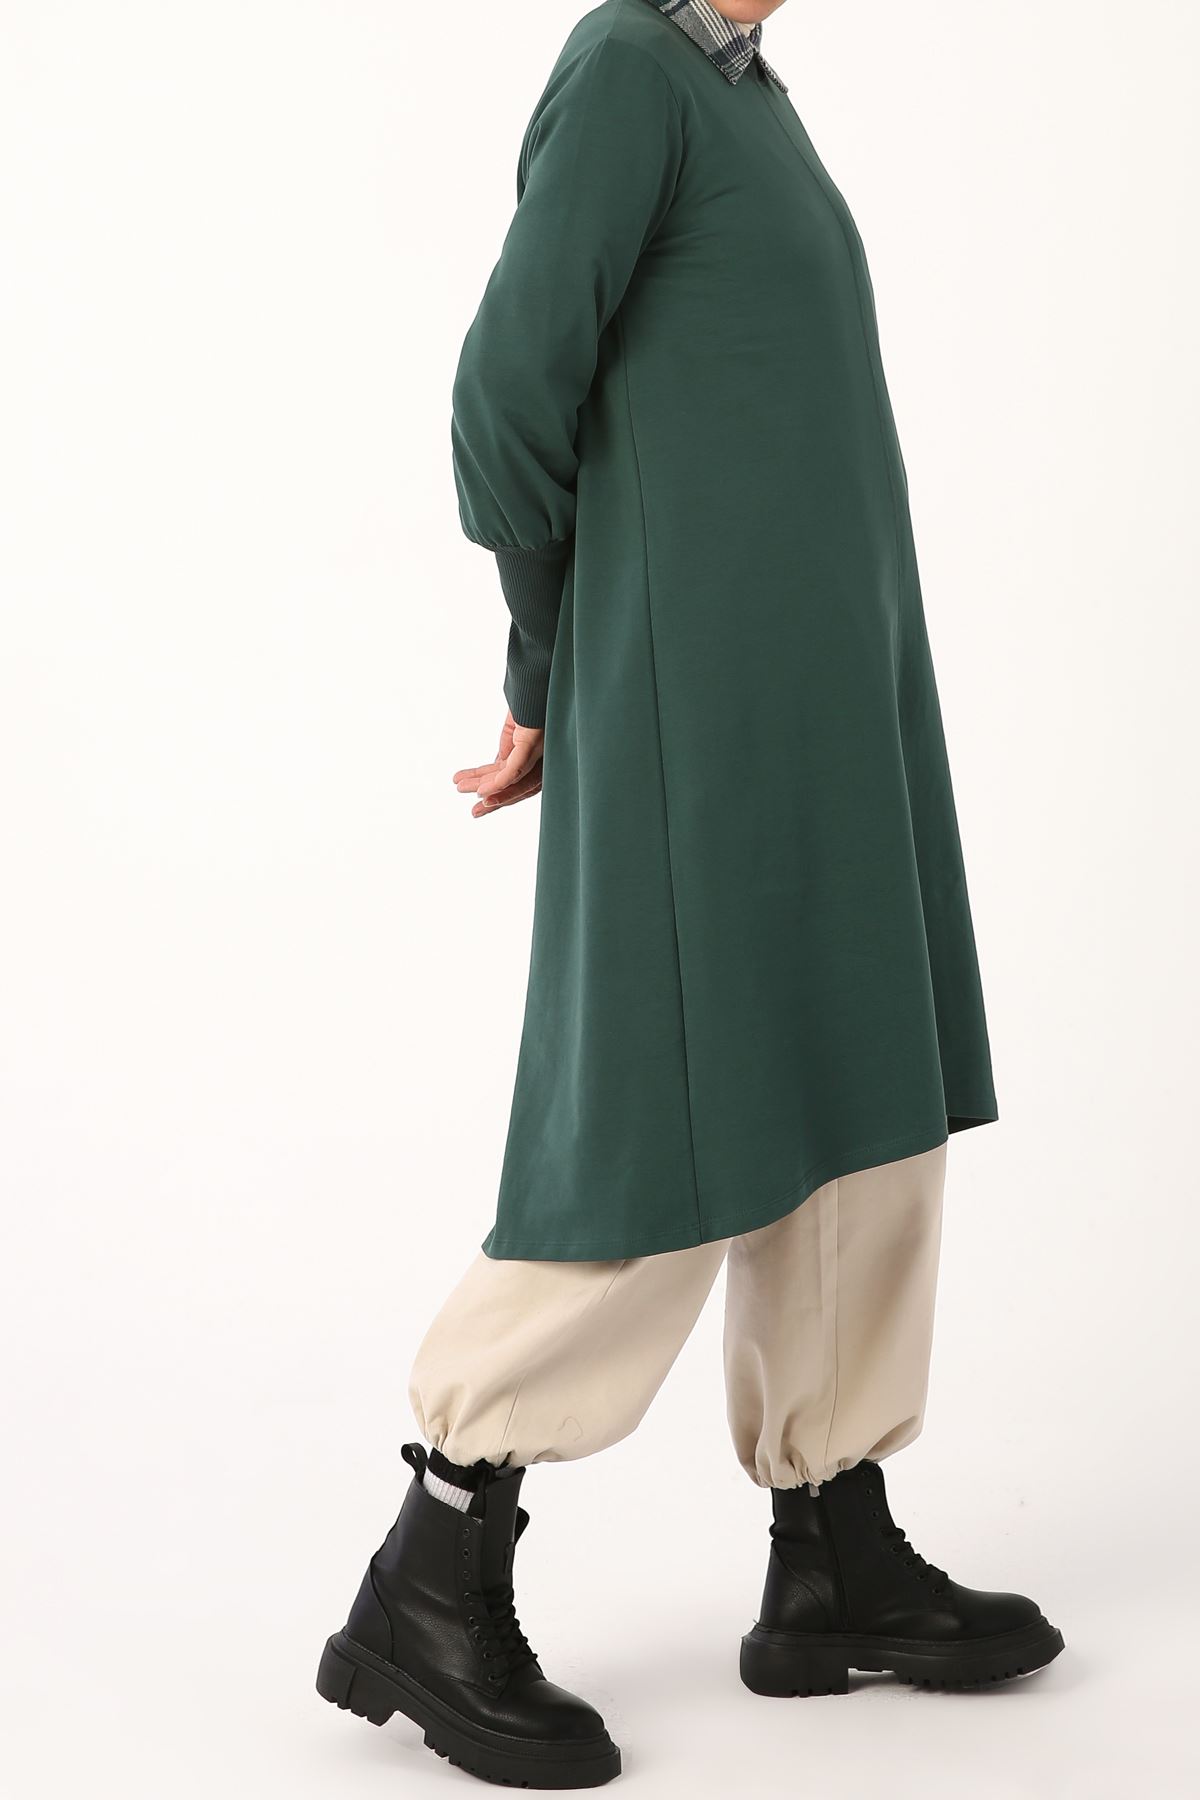 Kadın Yakası Ribanalı Rahat Tunik-zümrüt yeşili